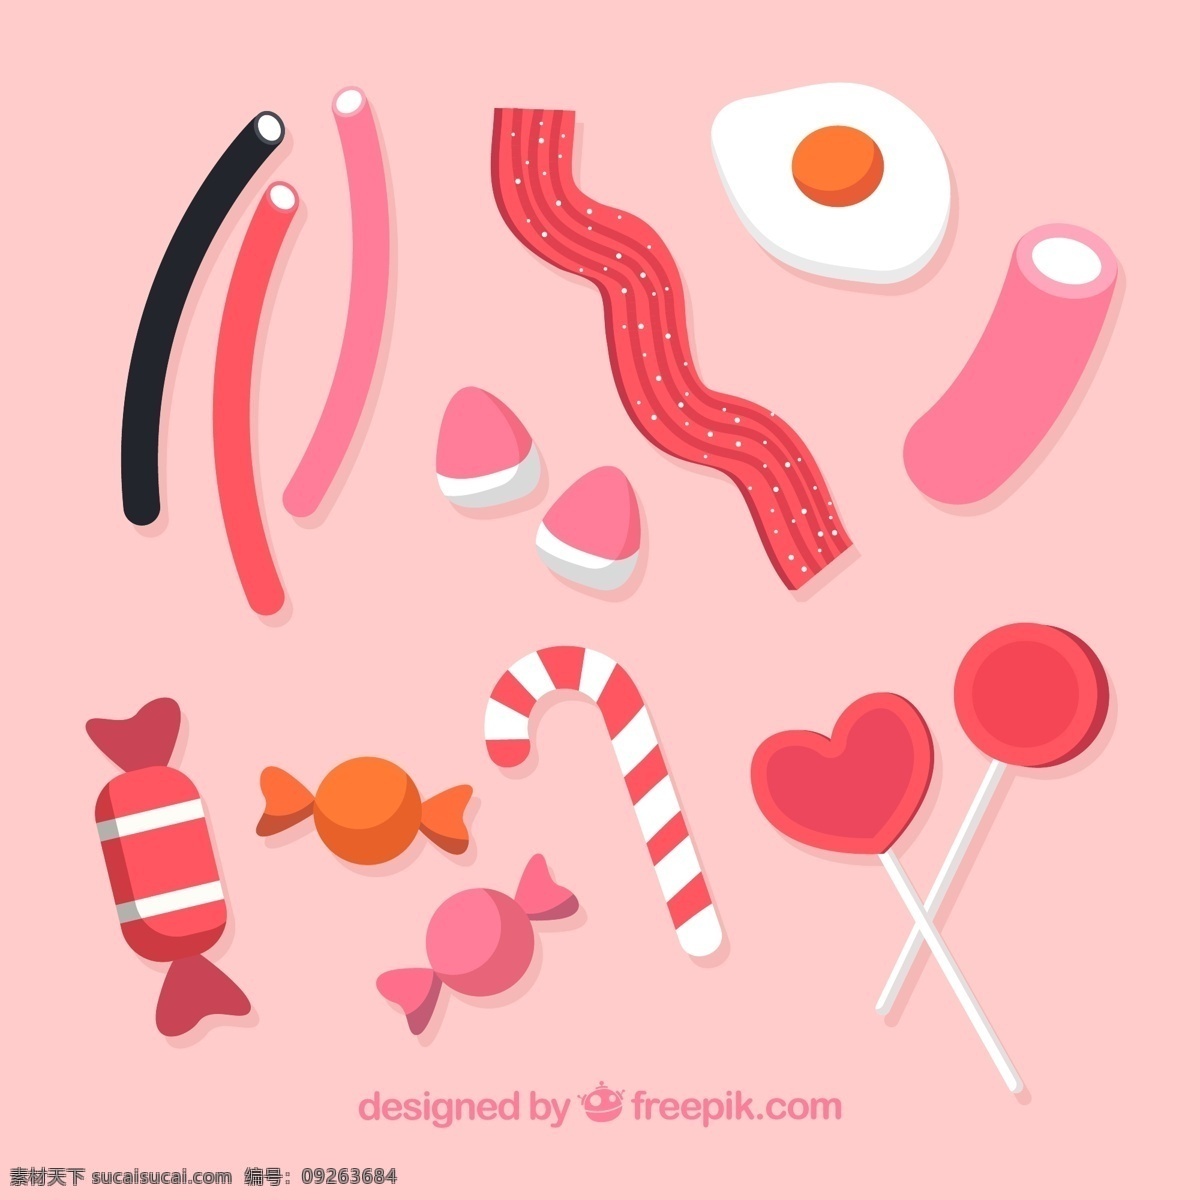 粉色的糖果 粉色 糖果 橡皮糖 充气糖果 软糖 棒棒糖 生活用品 生活百科 餐饮美食